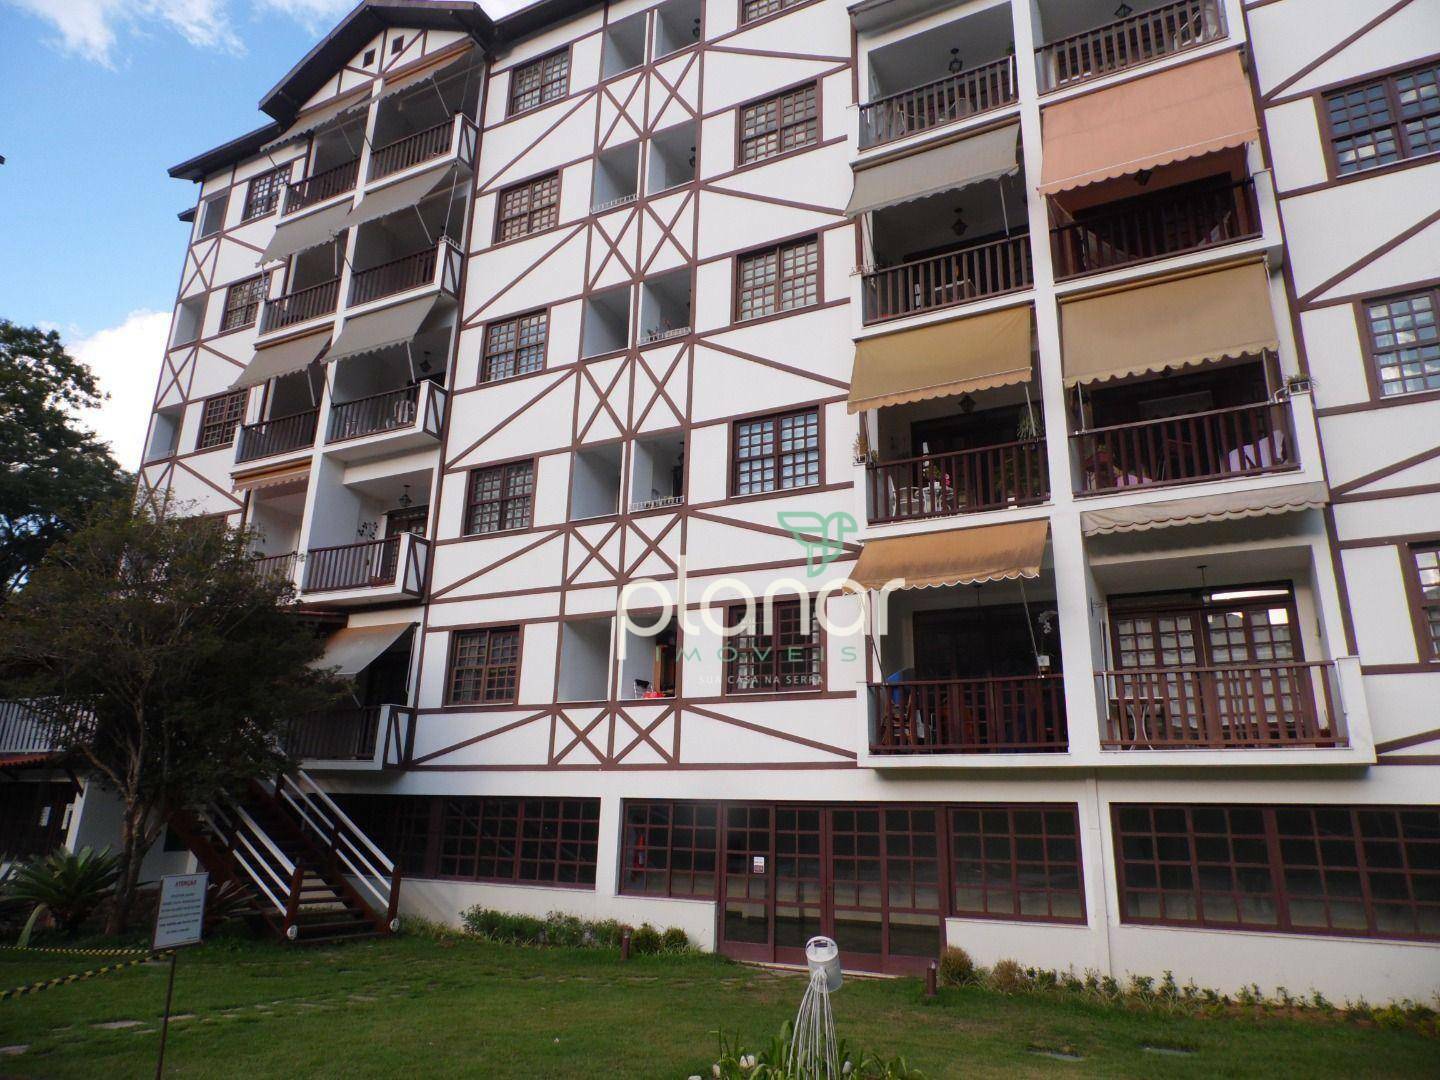 Apartamento à venda em Itaipava, Petrópolis - RJ - Foto 6